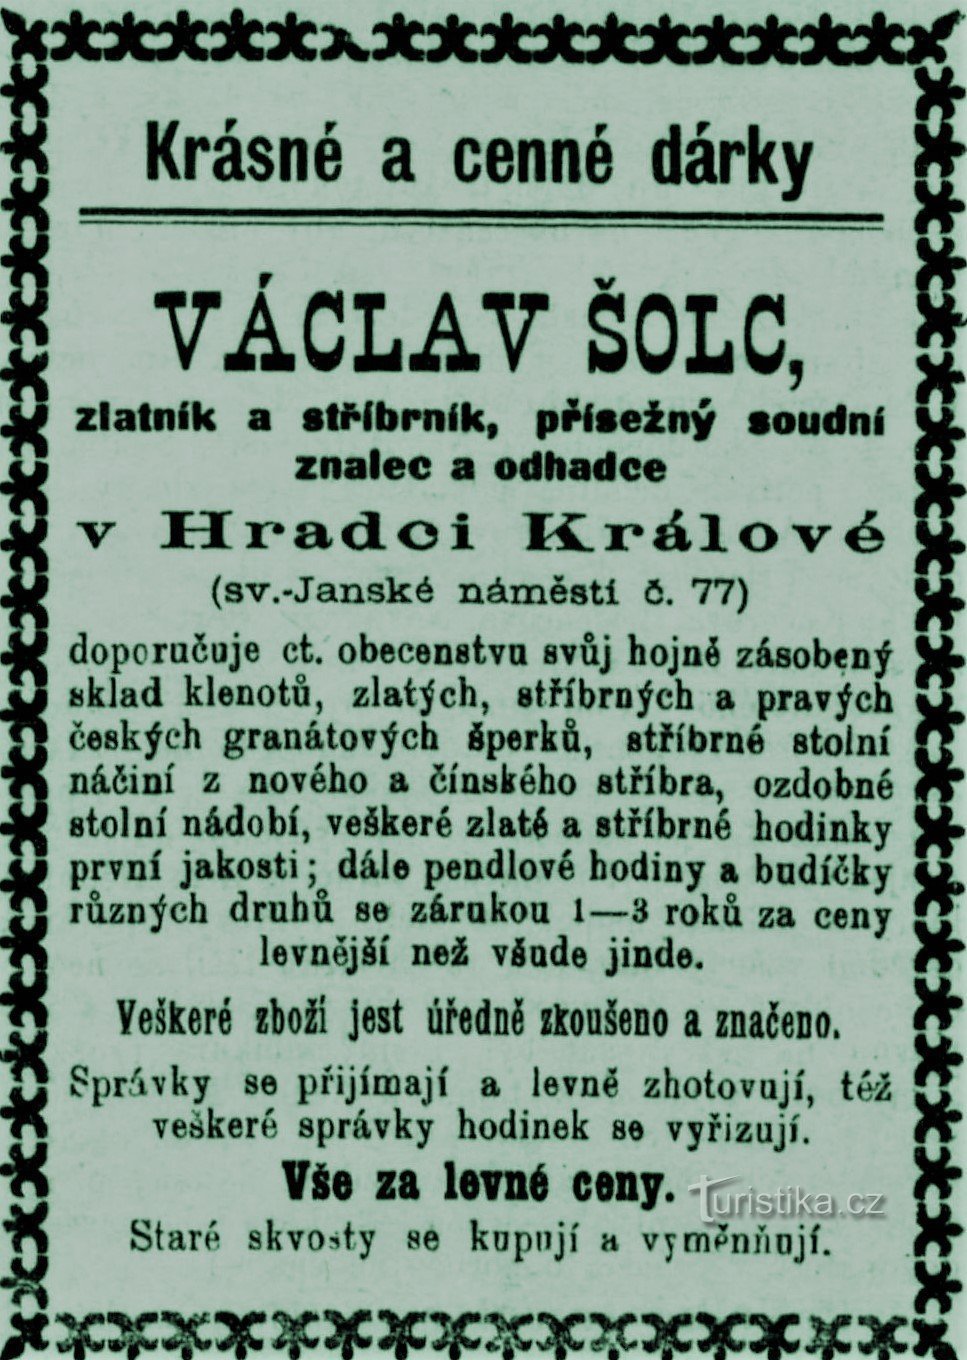 1899 年来自 Hradec Králové 的金匠 Václav Šolec 的当代广告